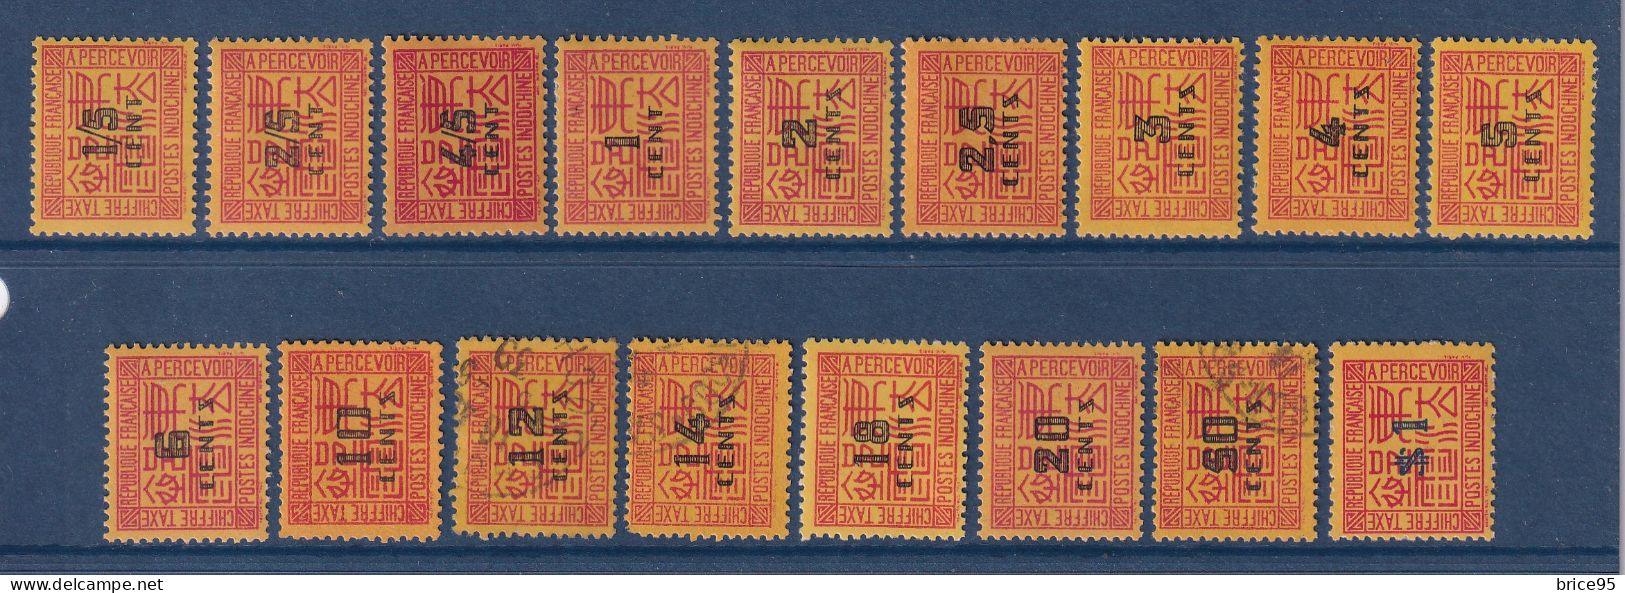 Indochine - Taxe - YT N° 57 à 73 - Neuf Avec Charnière Et Oblitéré - Manque N° 74 - 1931 à 1941 - Timbres-taxe